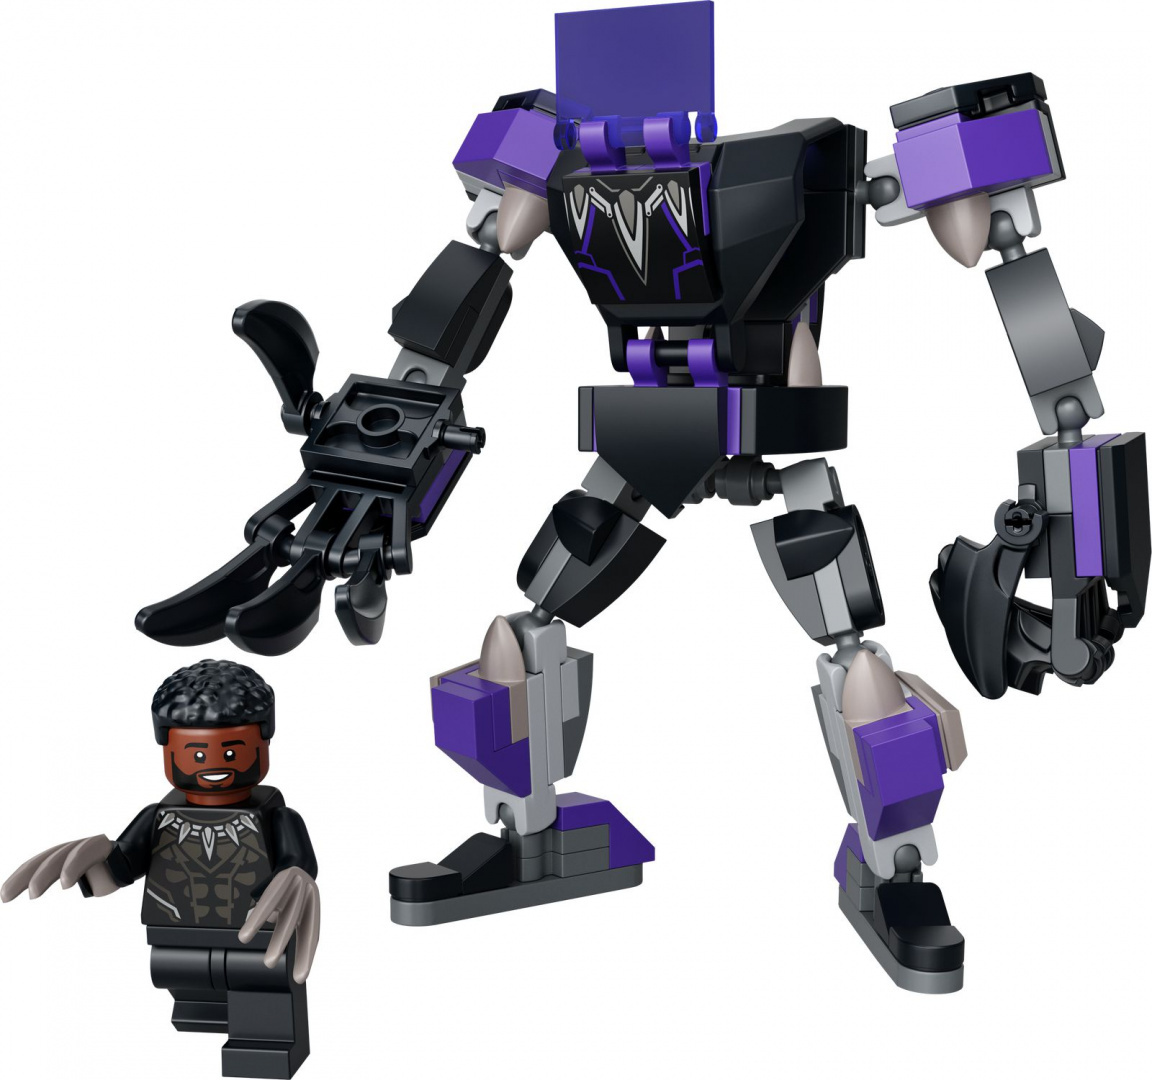 LEGO SUPER HEROES Mechaniczna zbroja Czarnej Pantery 76204